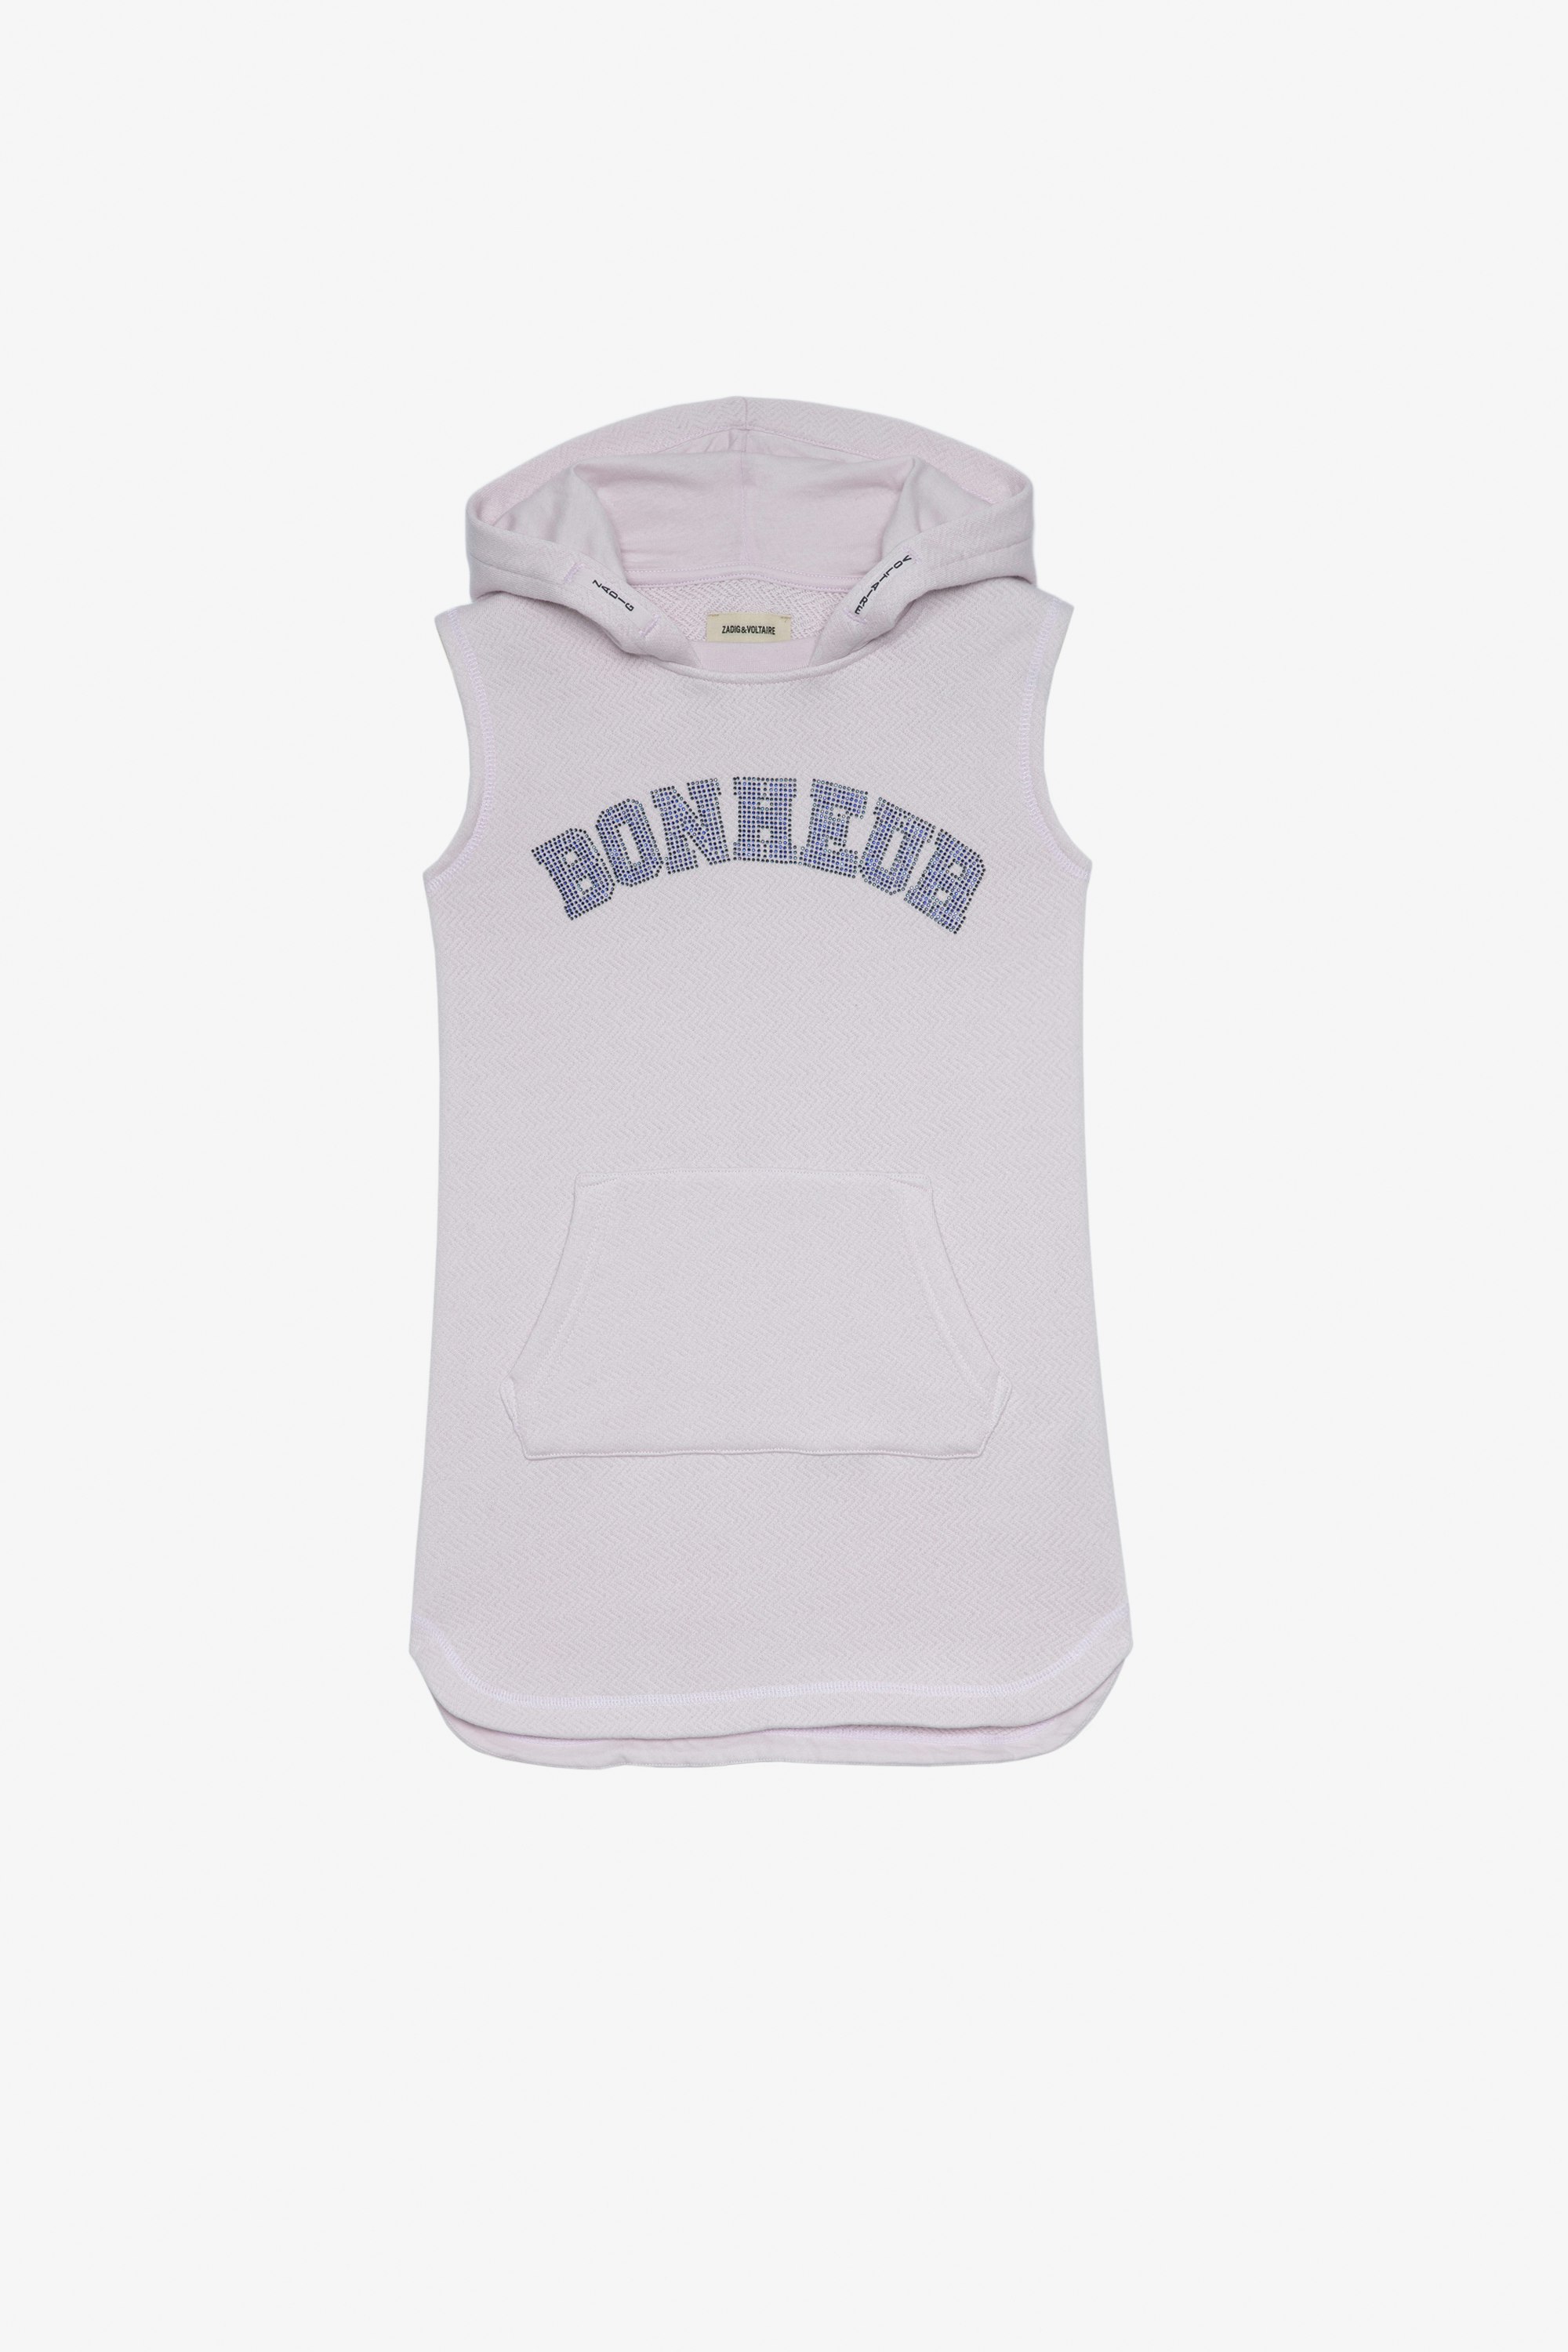 Bliss Kids' Dress Kids’ sleeveless hoodie dress with “Bonheur” slogan in rhinestones